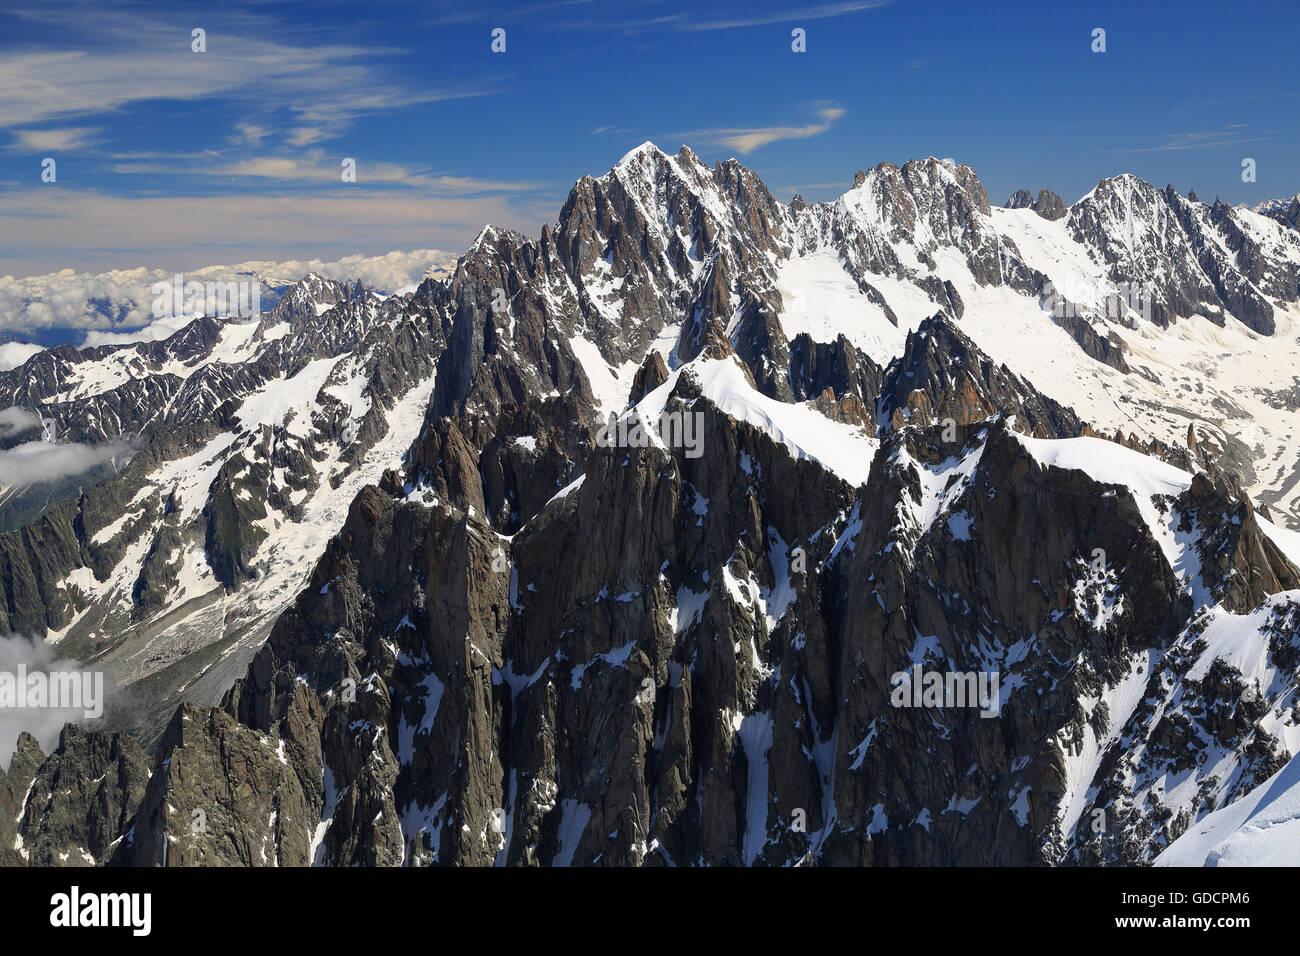 Les alpinistes Alpes montagnes près de Aiguille du Midi, France, Europe Banque D'Images